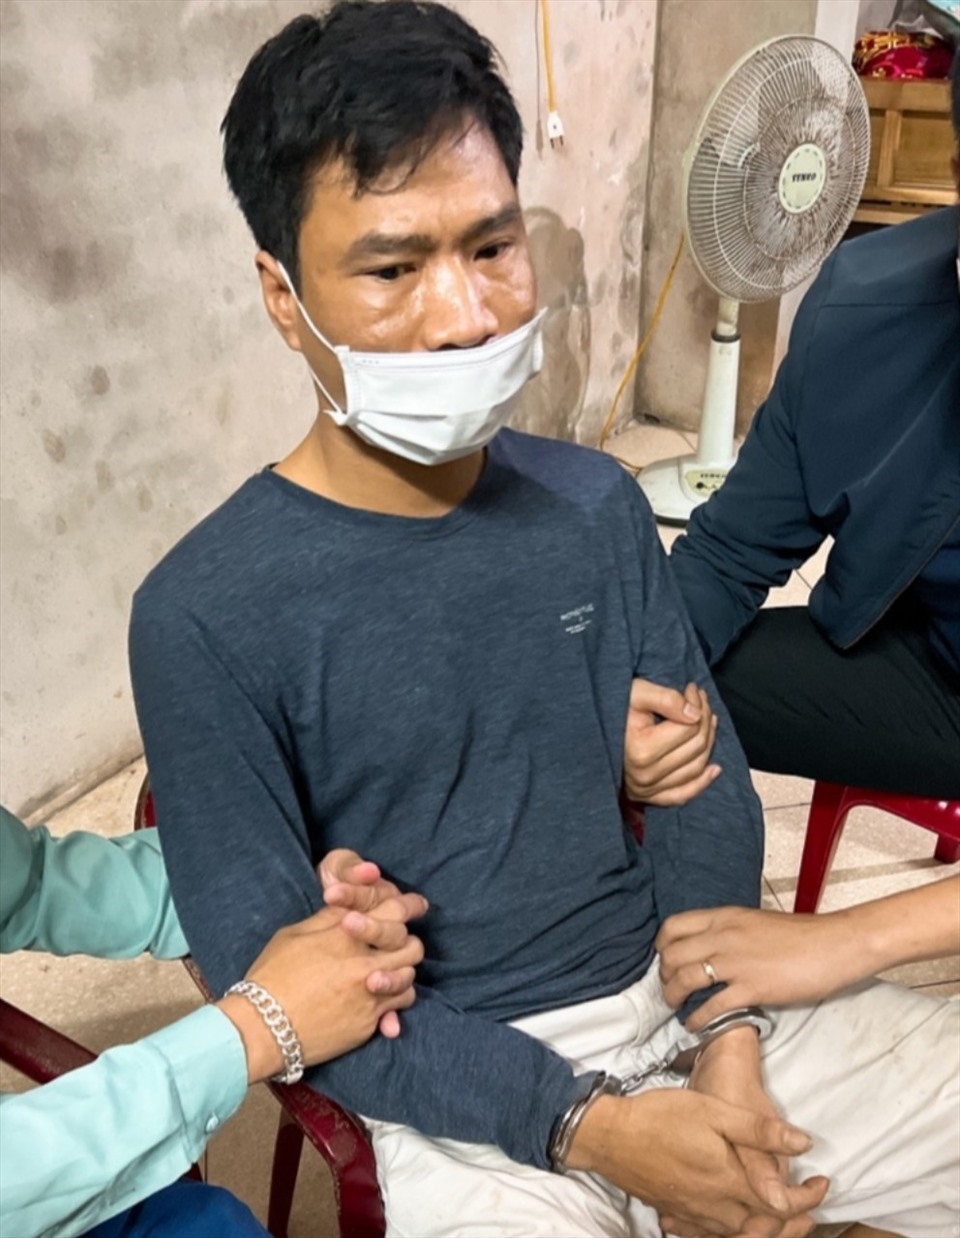 Đối tượng Phạm Văn Dùng bị tạm giữ hình sự để điều tra về hành vi “giết người“. Ảnh: NT